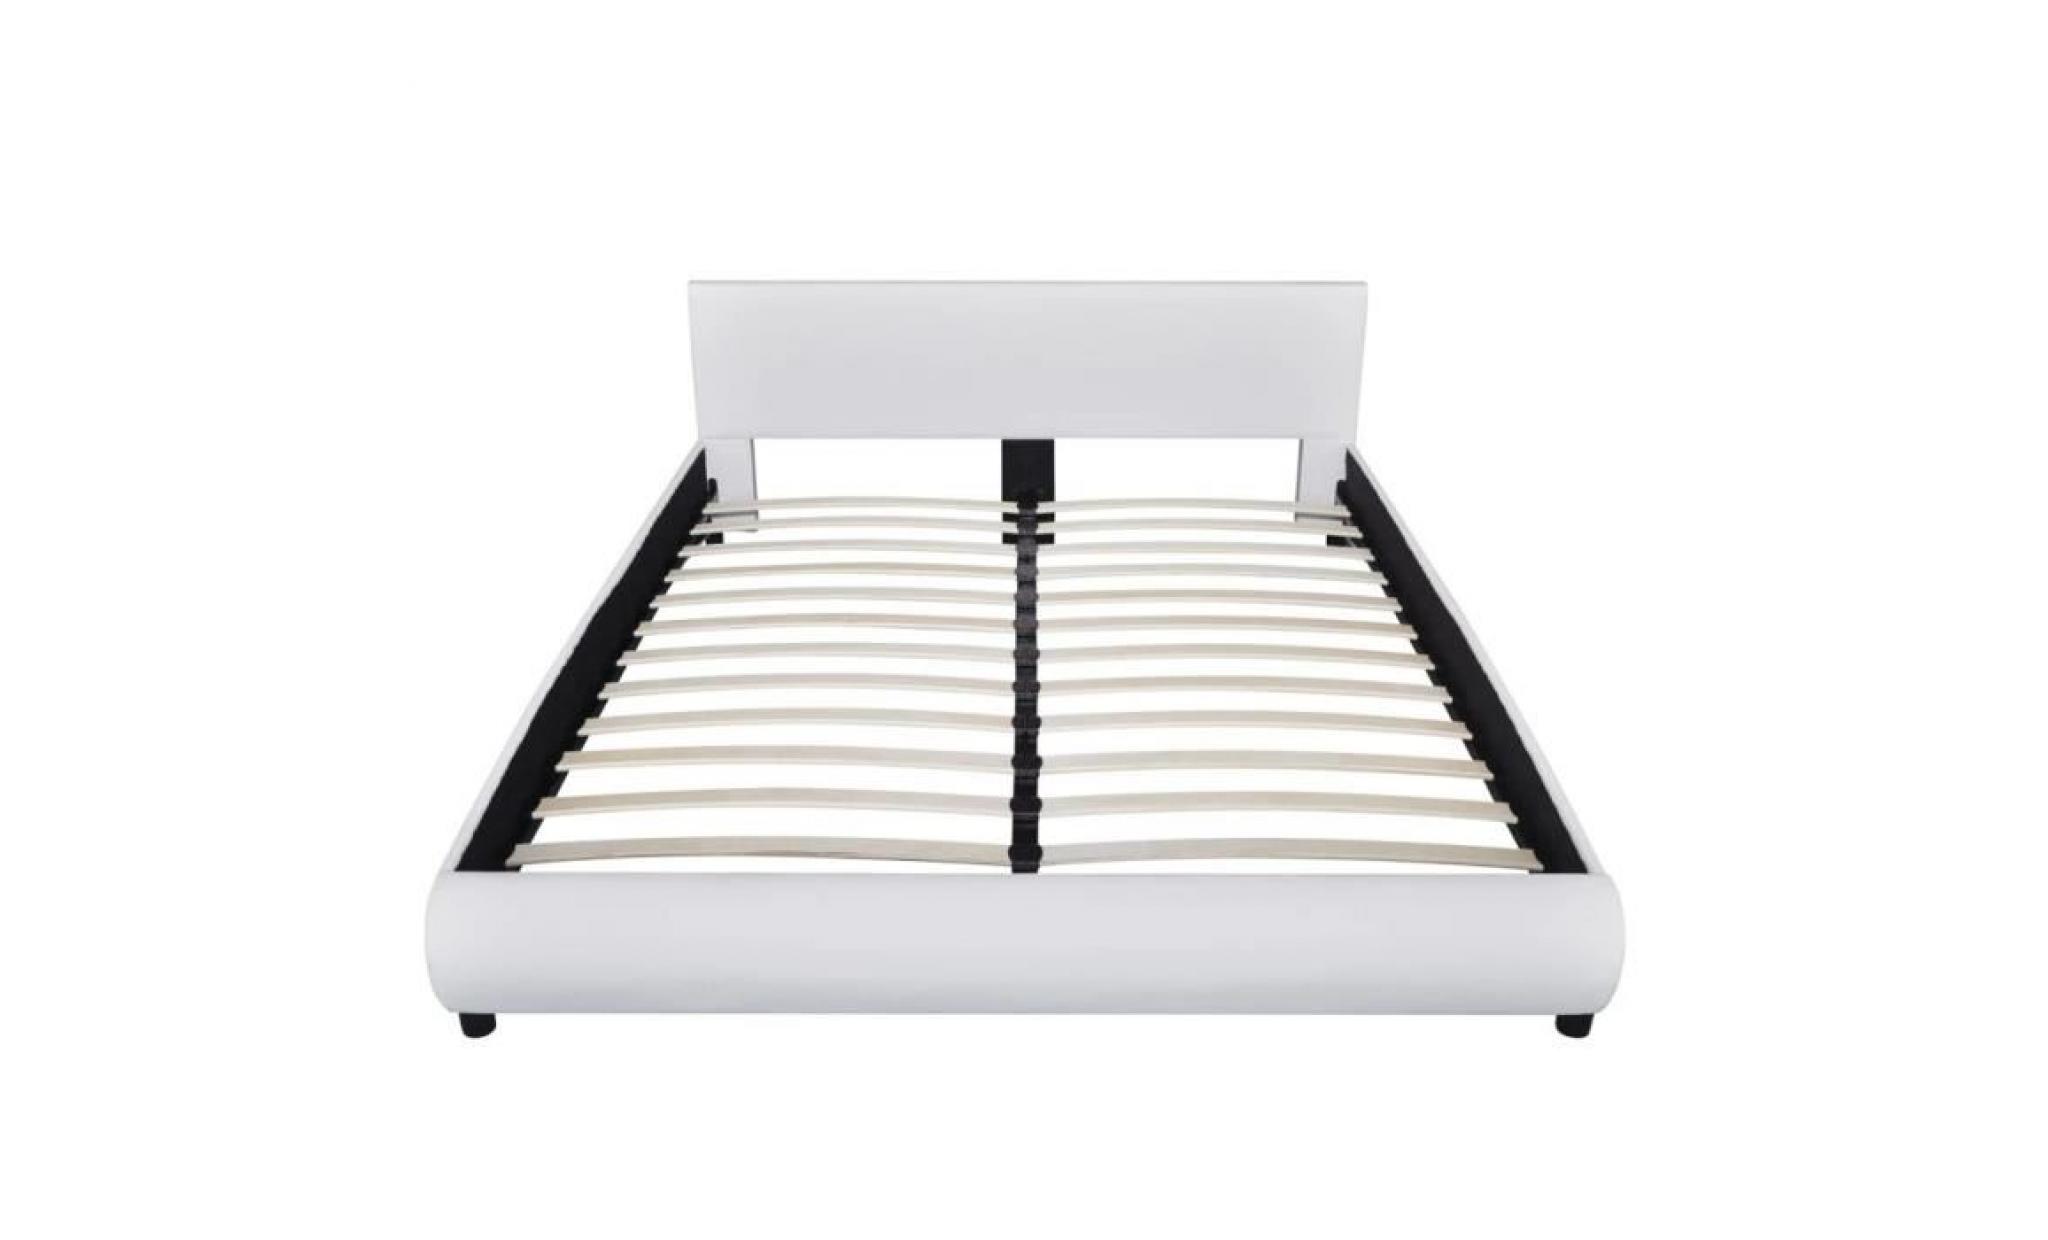 lit 160 x 200 cm structure de lit lit adulte lit enfant lit contemporain scandinave cuir artificiel blanc pas cher